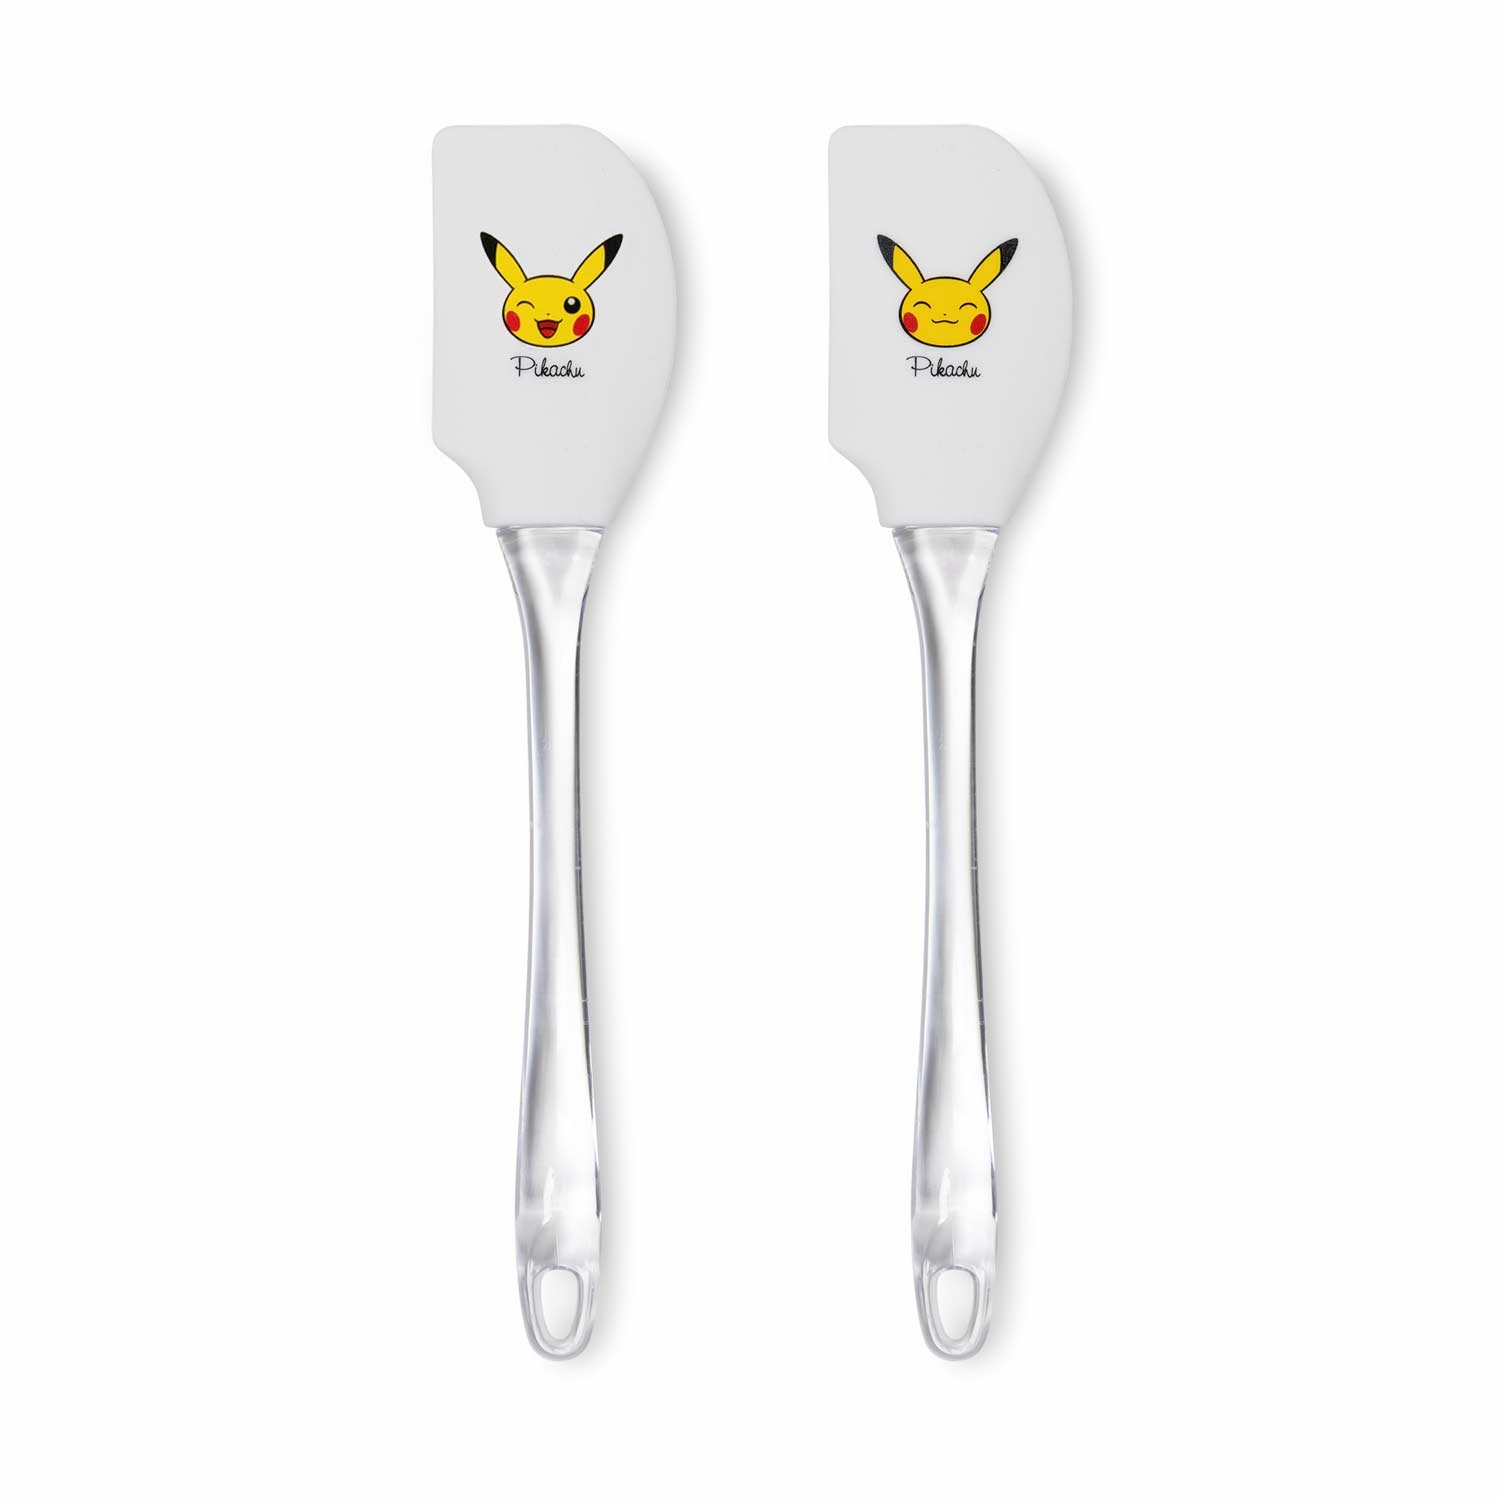 Pikachu_Kitchen_Spatulas_Product_Image.jpg